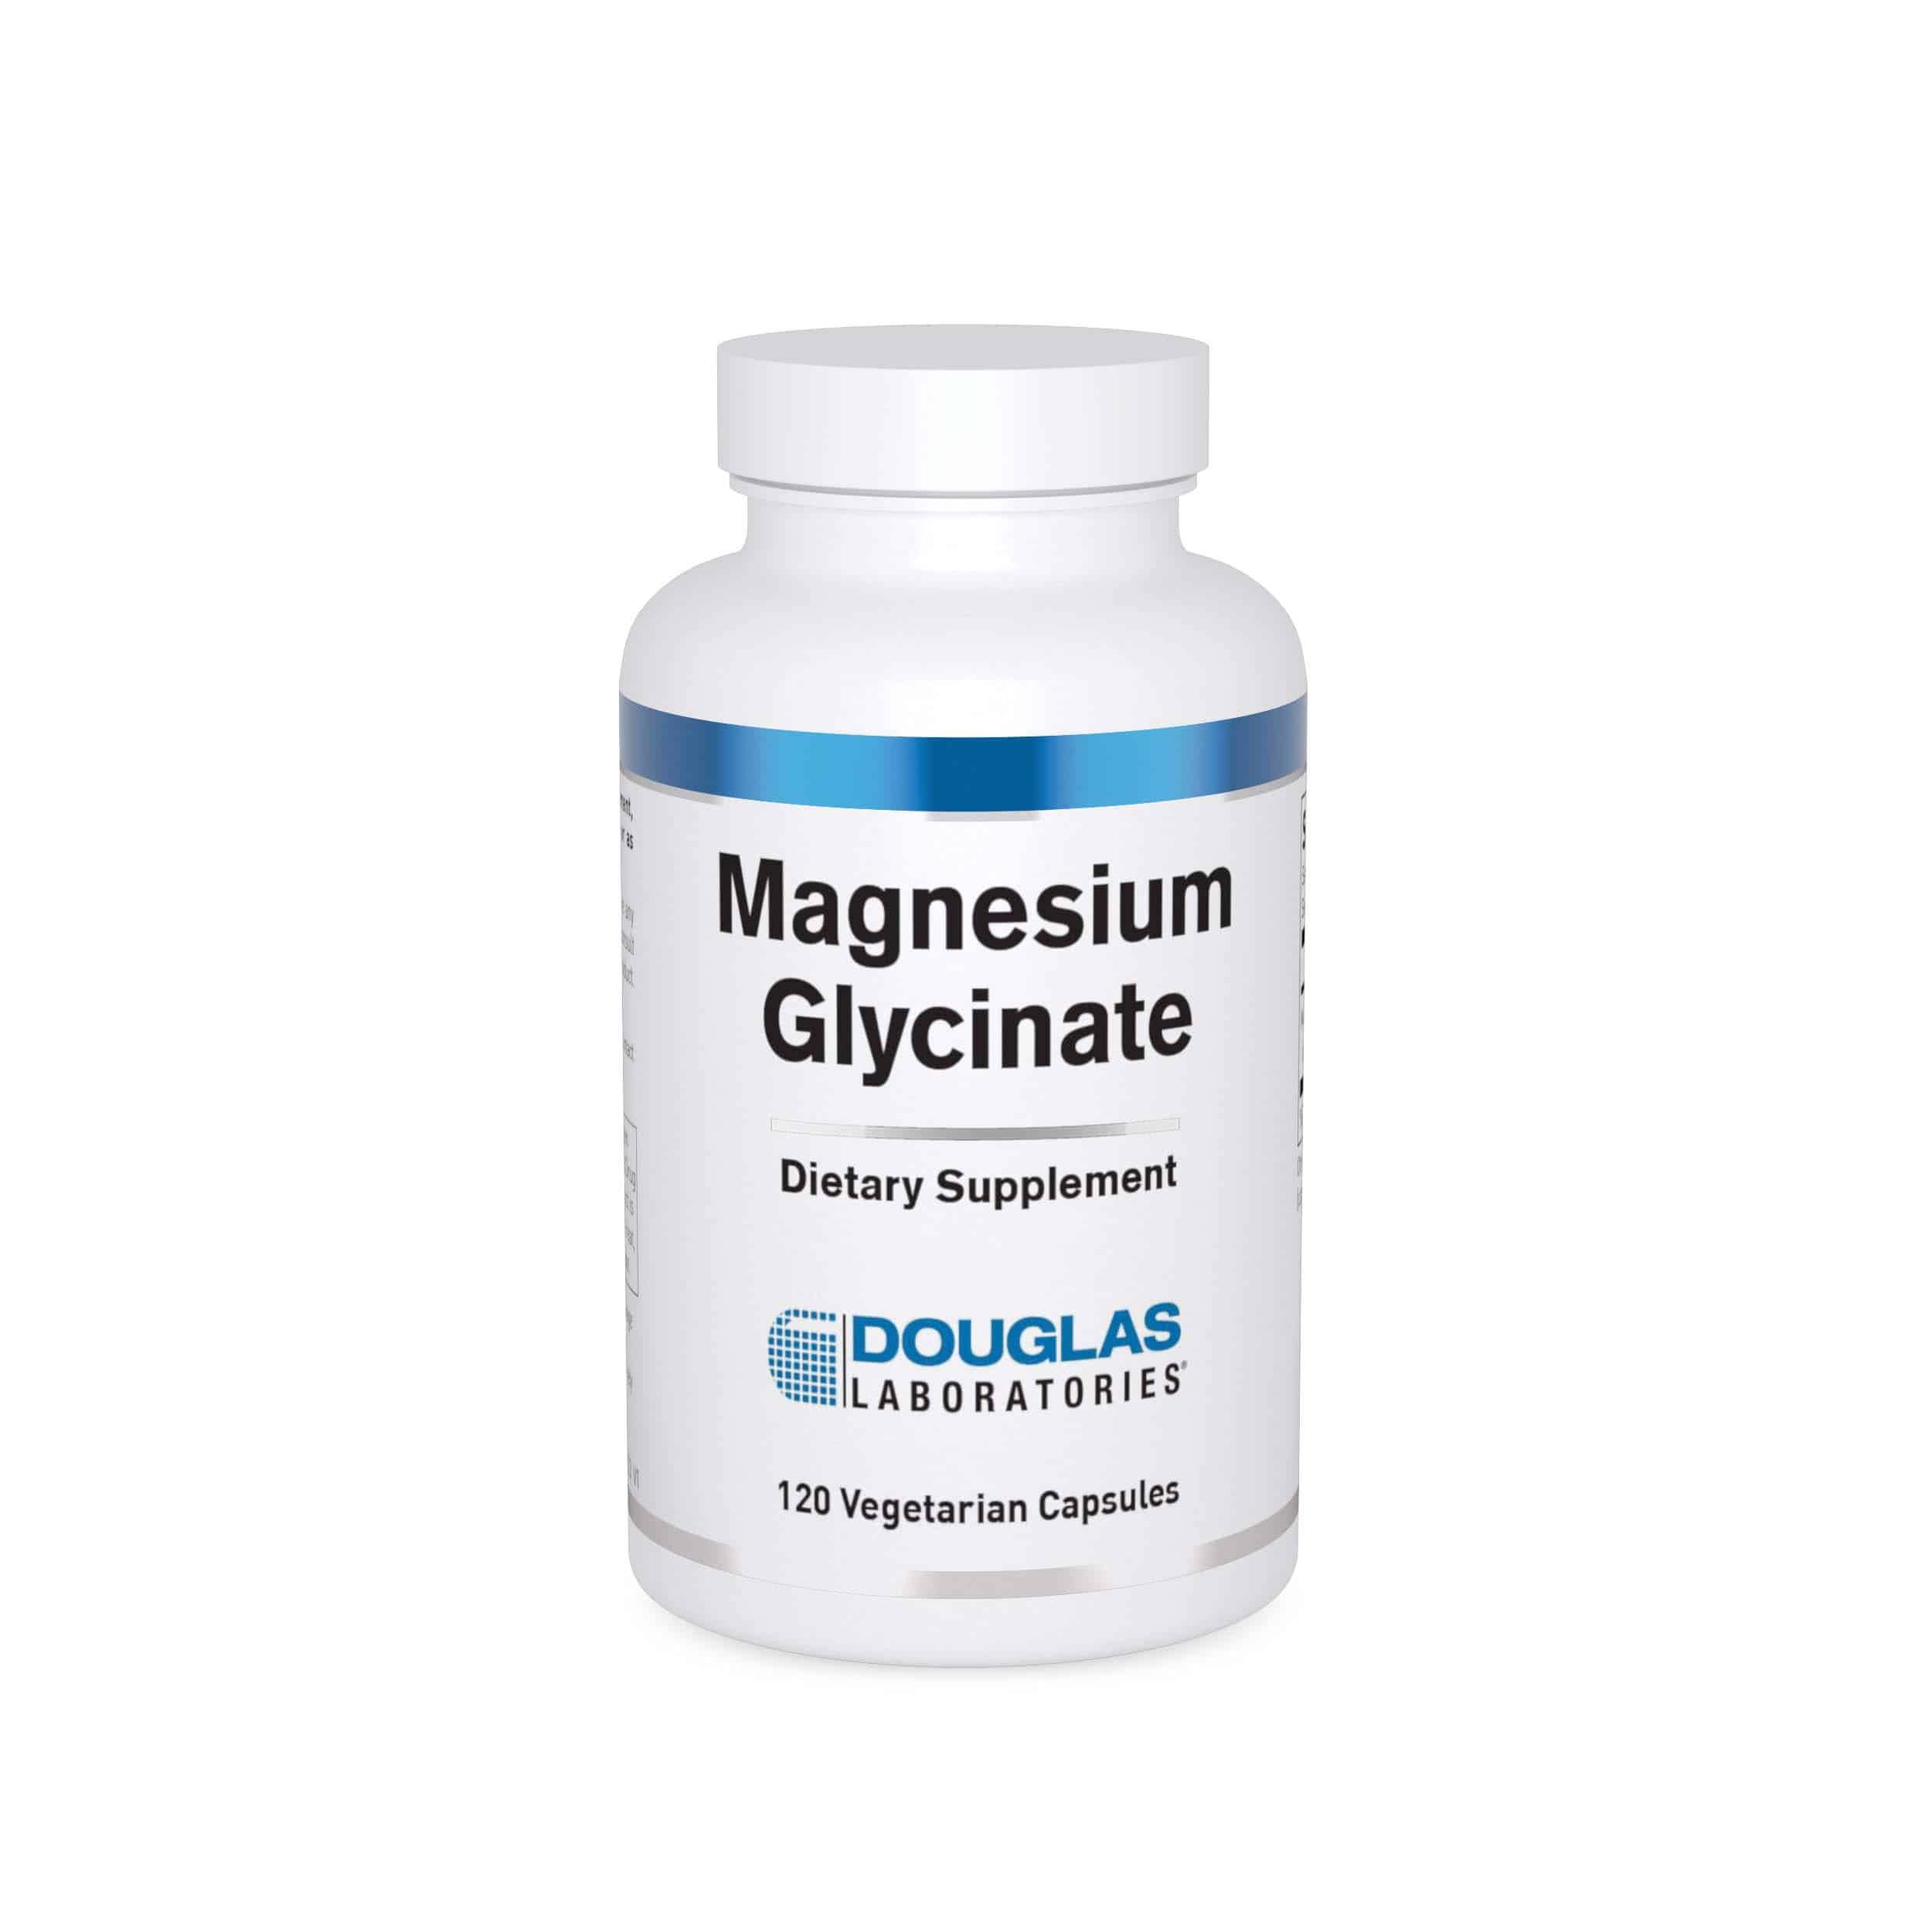 Douglas Laboratories - Magnesium Glycinate 120 Capsules